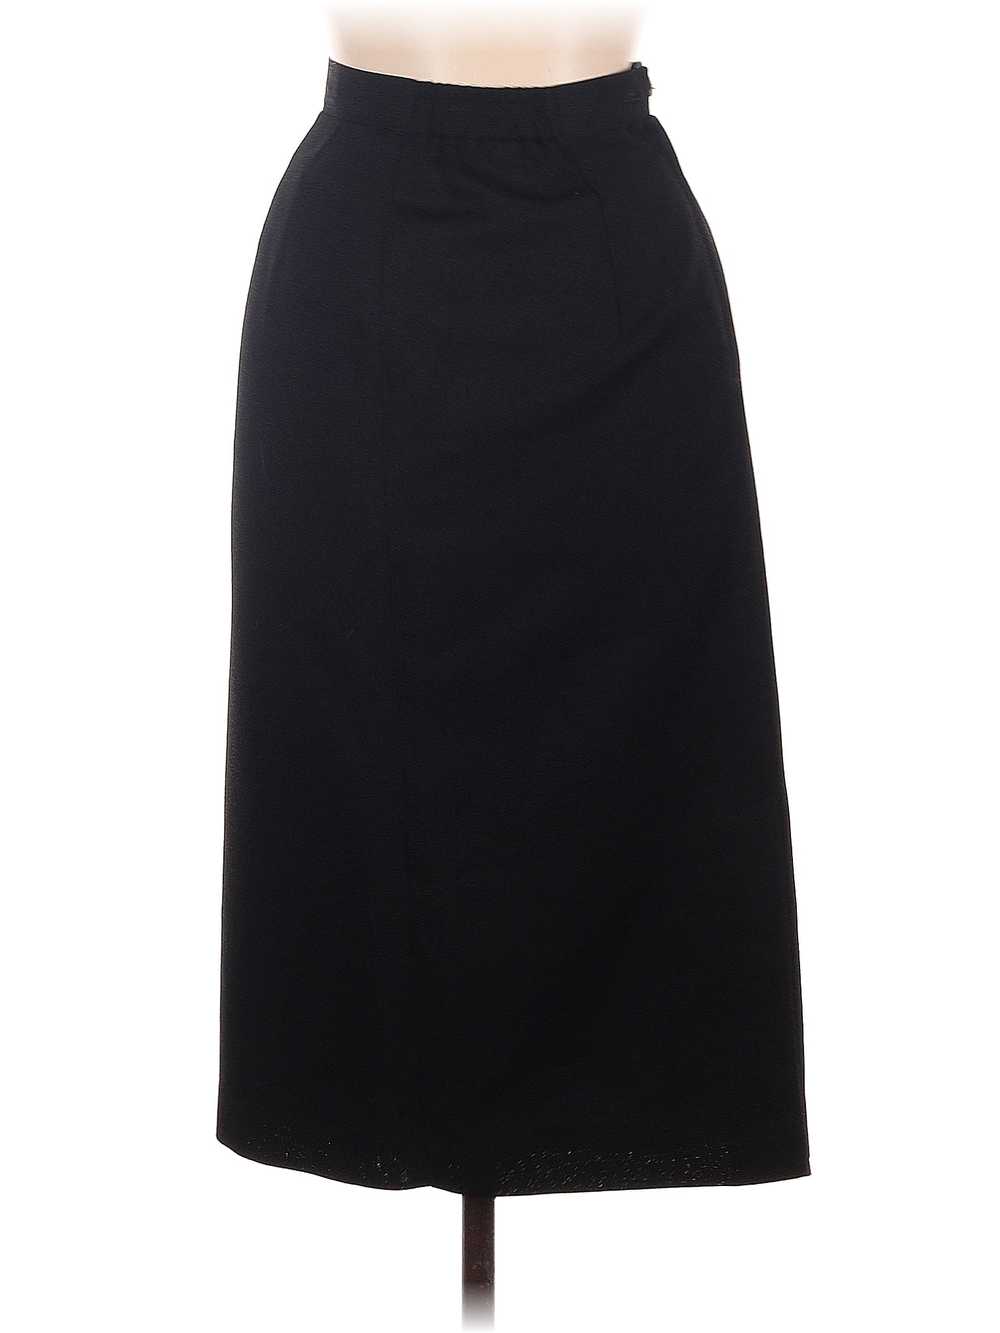 Joan Leslie Women Black Formal Skirt 8 - image 2